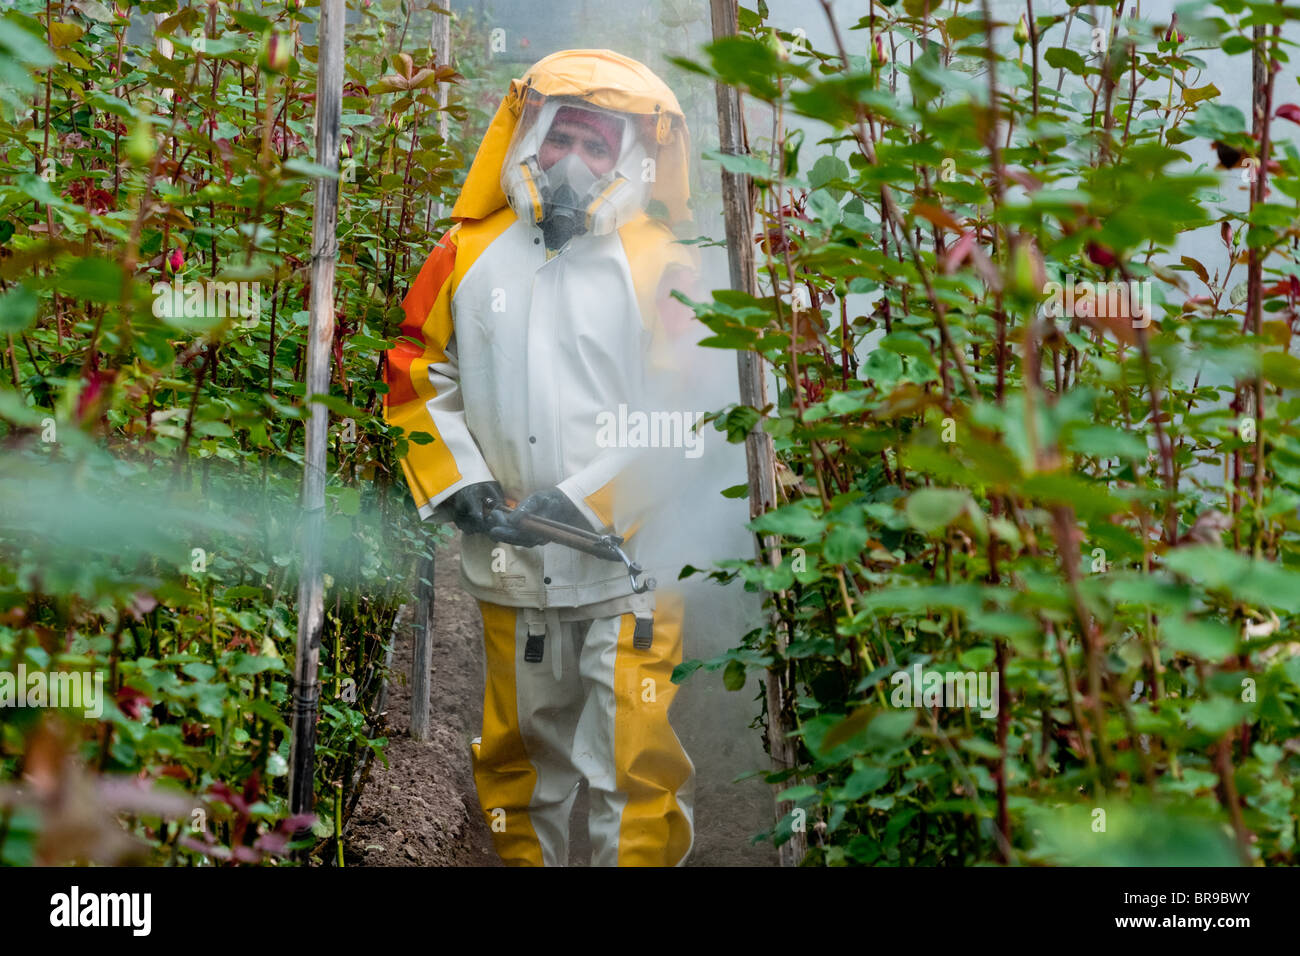 Ein Arbeiter geht unter Rosen Spritzen die Pestizid-Verdünnung bei einer  Blumenfarm in Cayambe, Ecuador Stockfotografie - Alamy